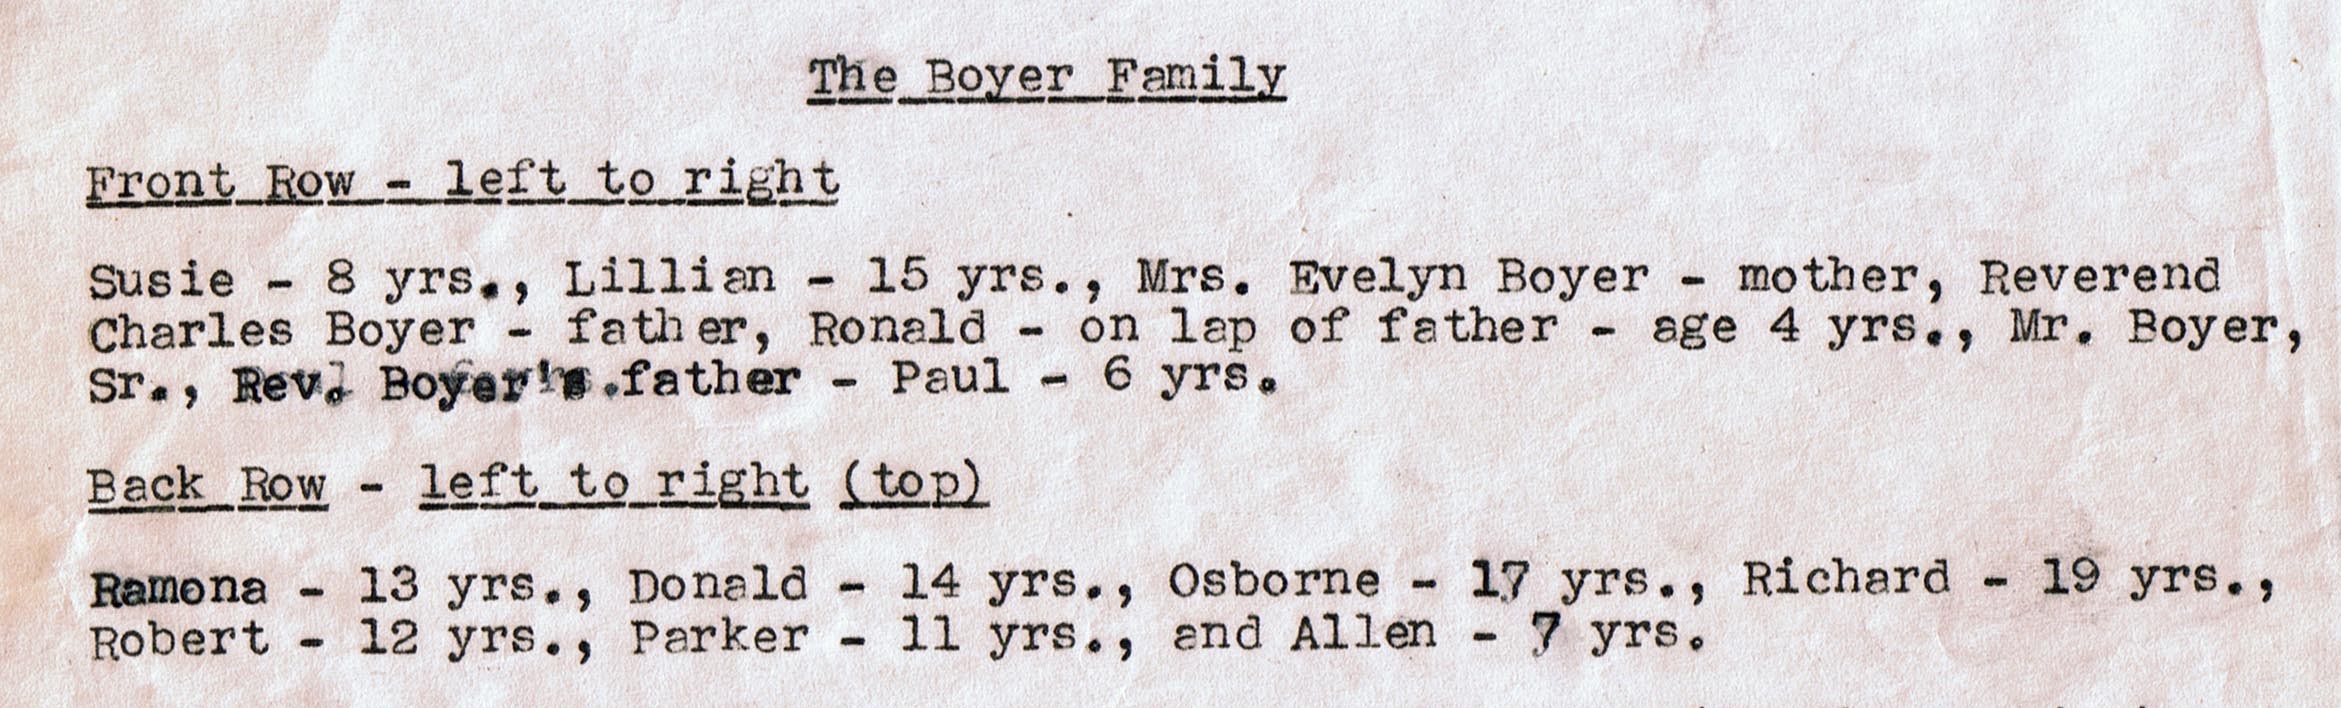 The Boyer family